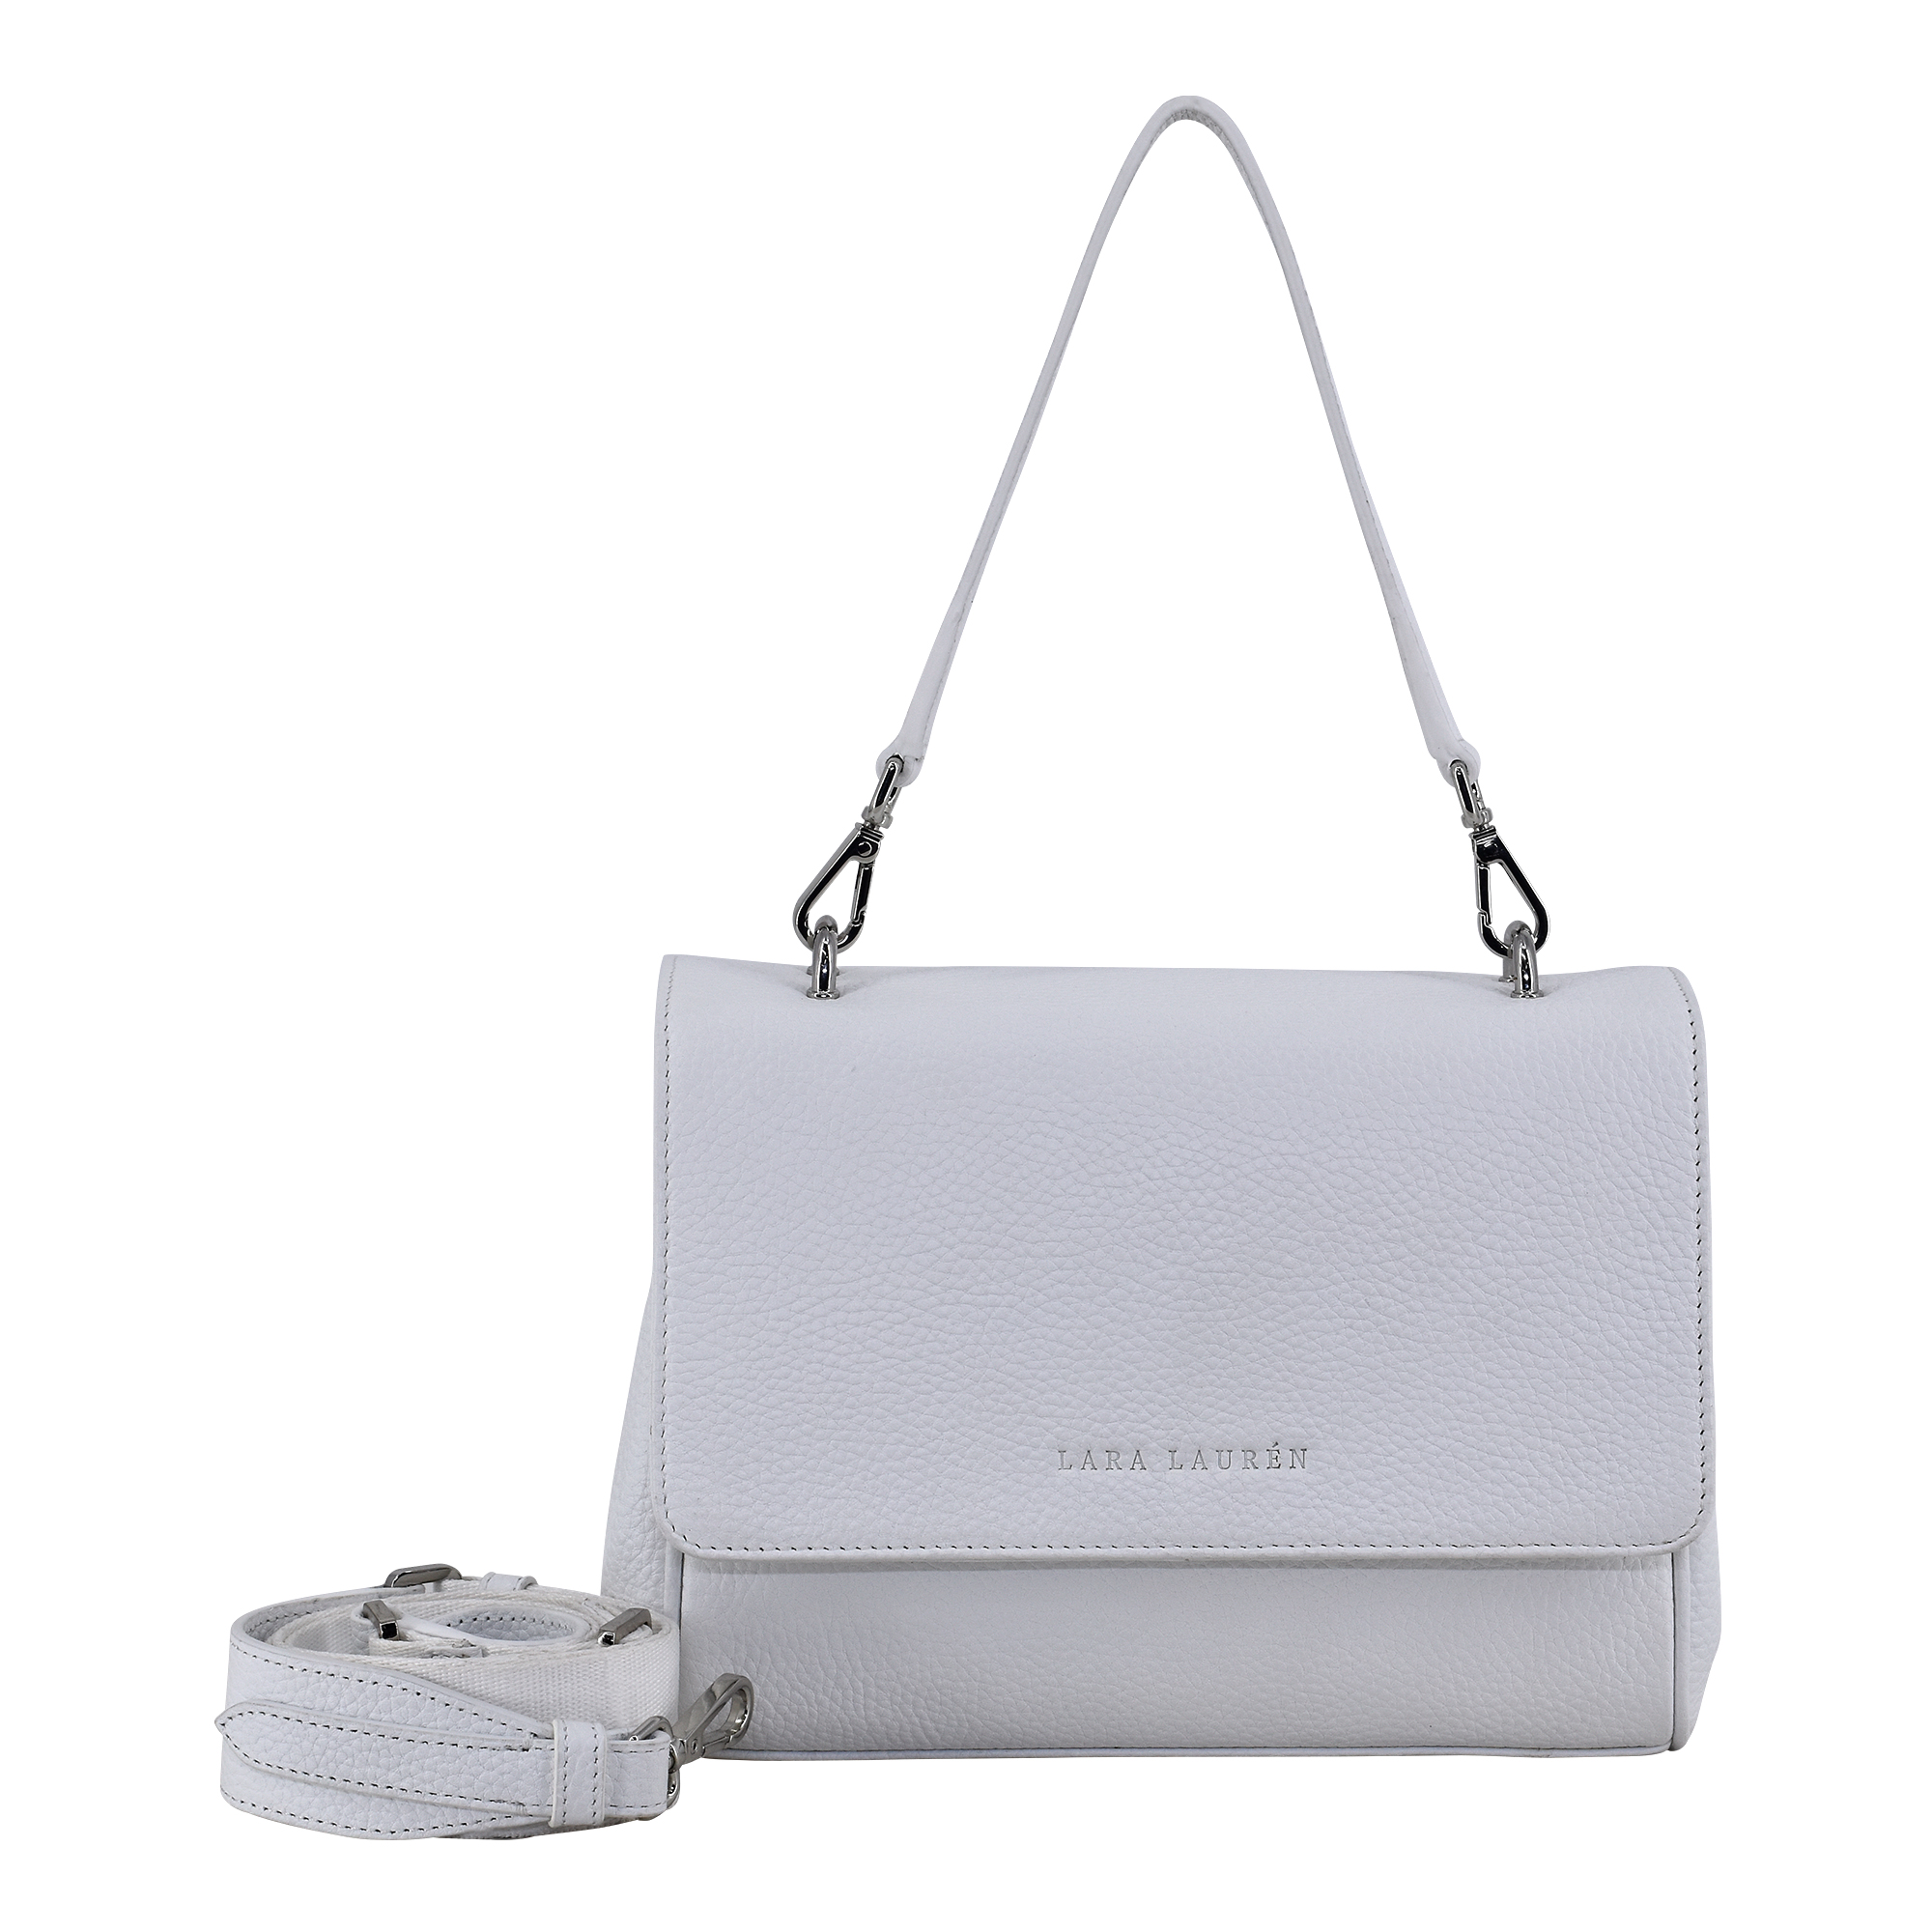 FLAPPY A Crossbody Überschlagtasche mit neuem Nylonriemen, white